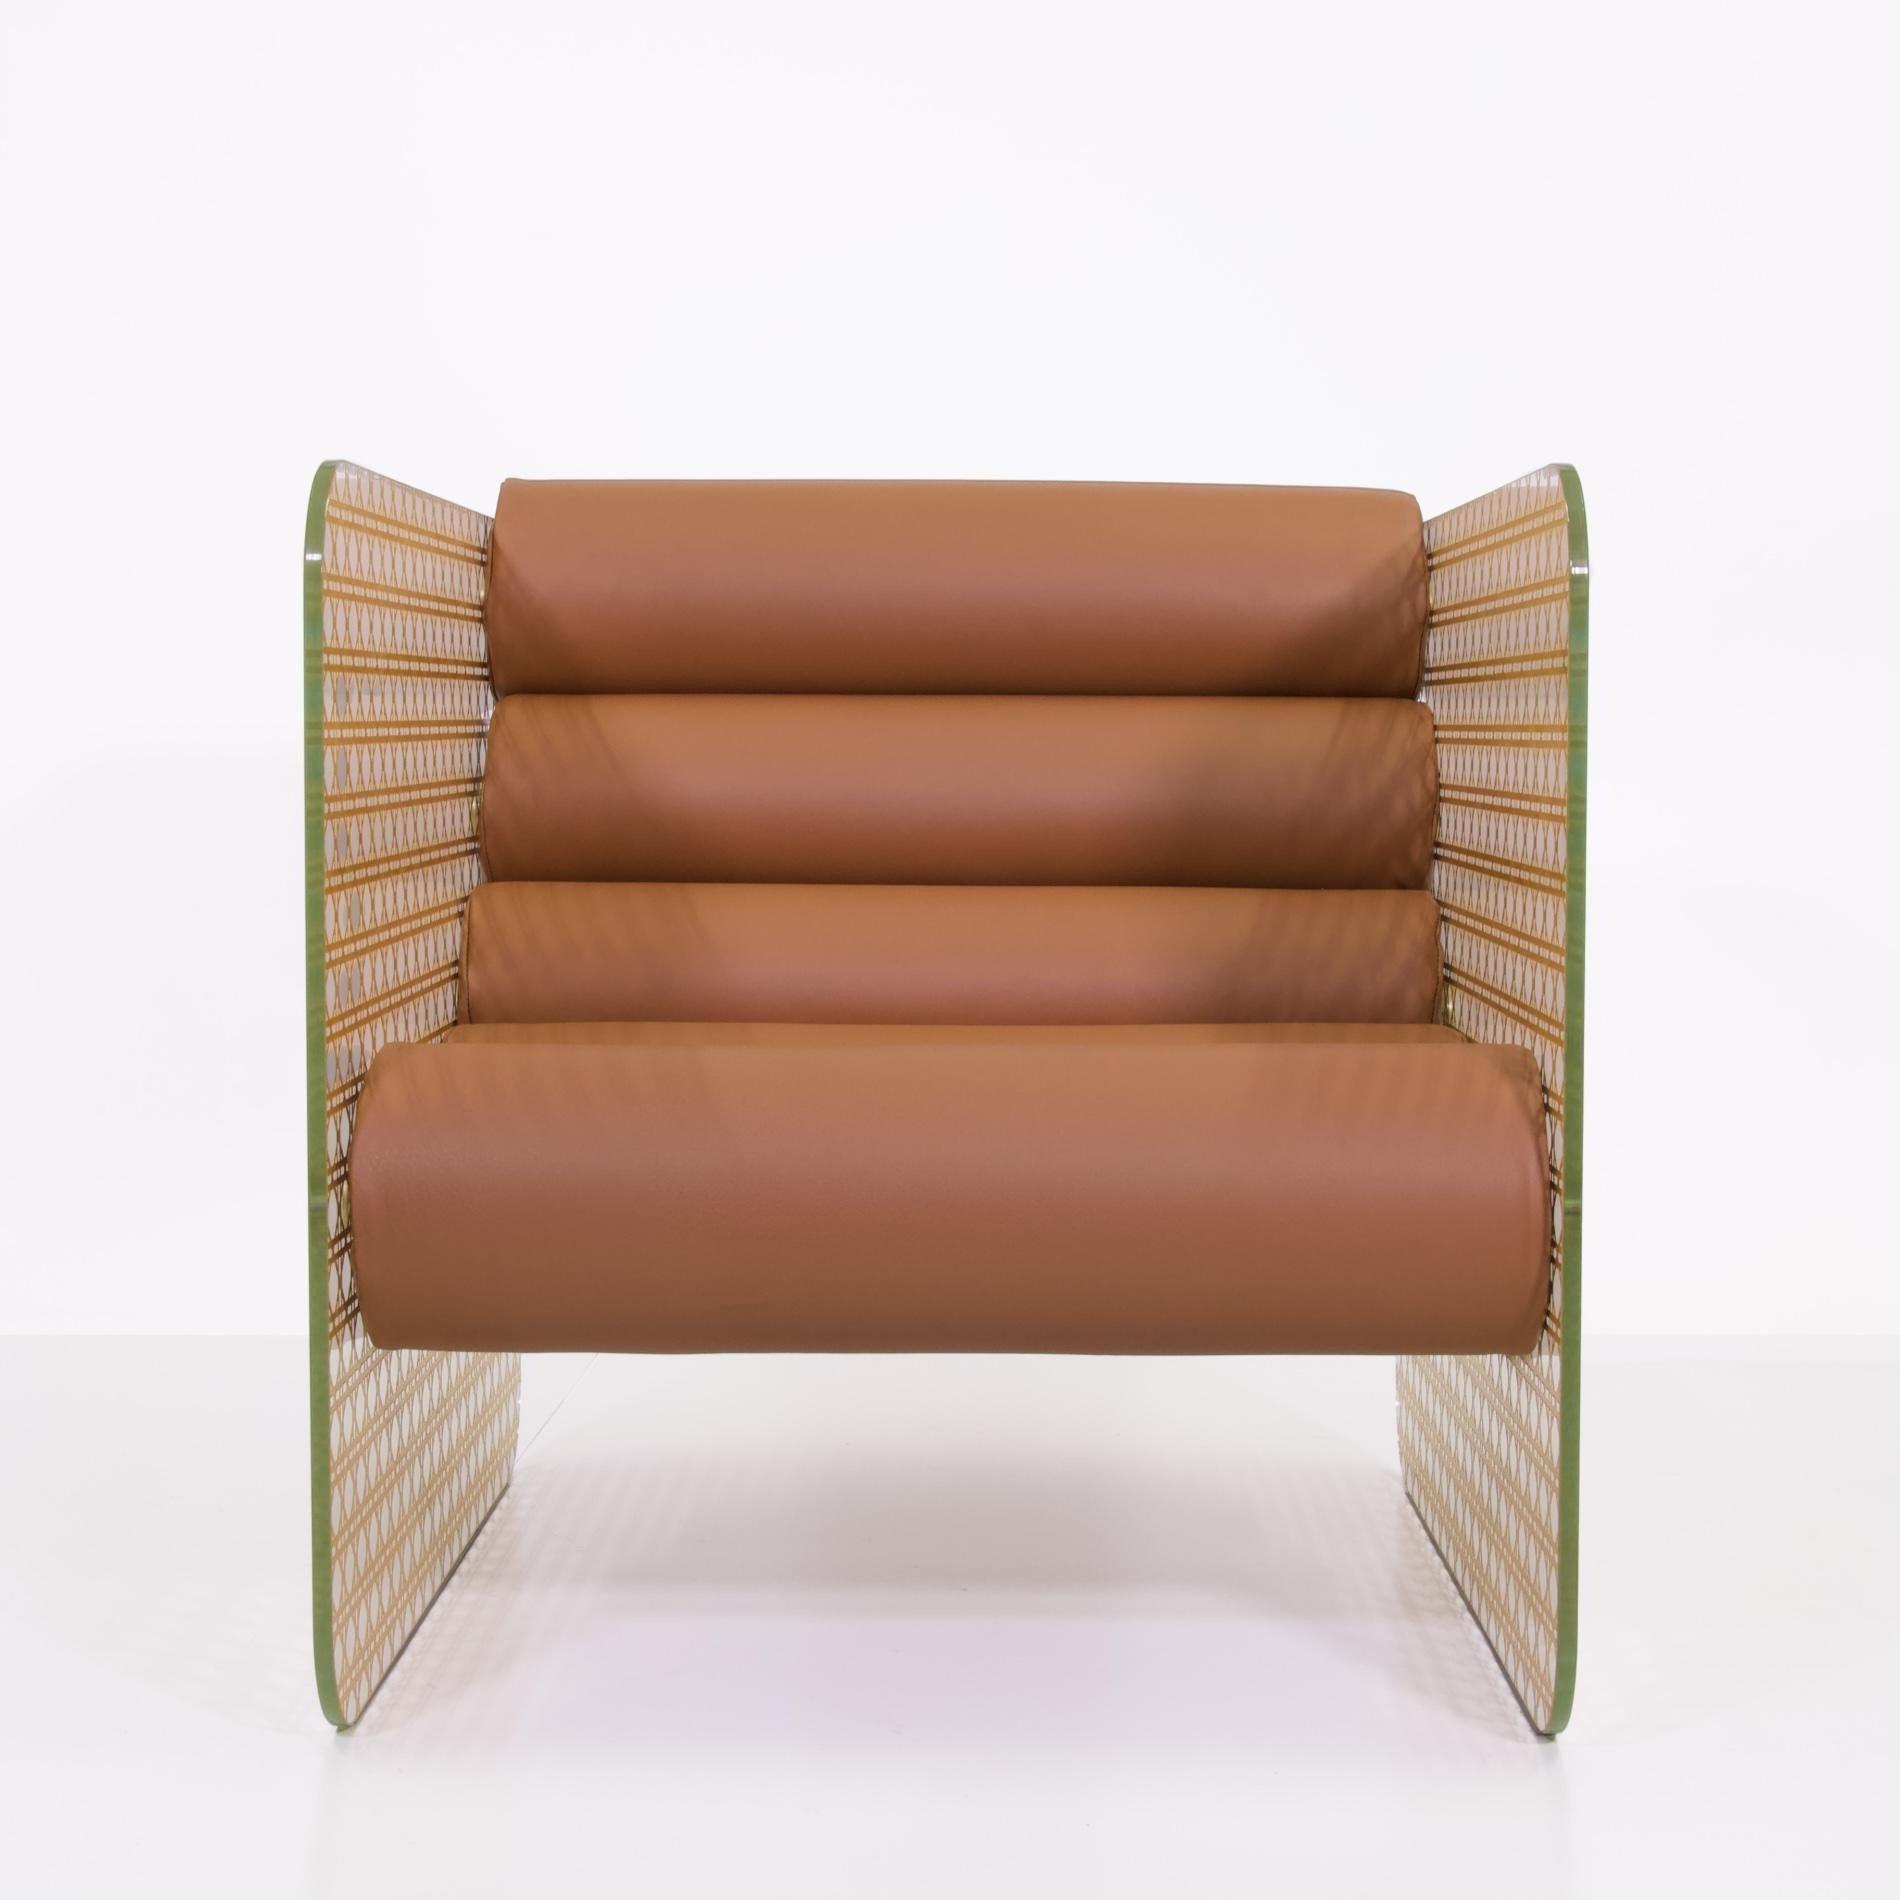 Der goldene Sessel MW02 Cannage verkörpert zeitlose Eleganz und ist ein ikonisches Symbol für Dior. Dieser Sessel ist gleichzeitig eine Oase des Komforts, ein dekorativer Wert und ein wertvolles Sammlerstück. Seine fein gravierten und